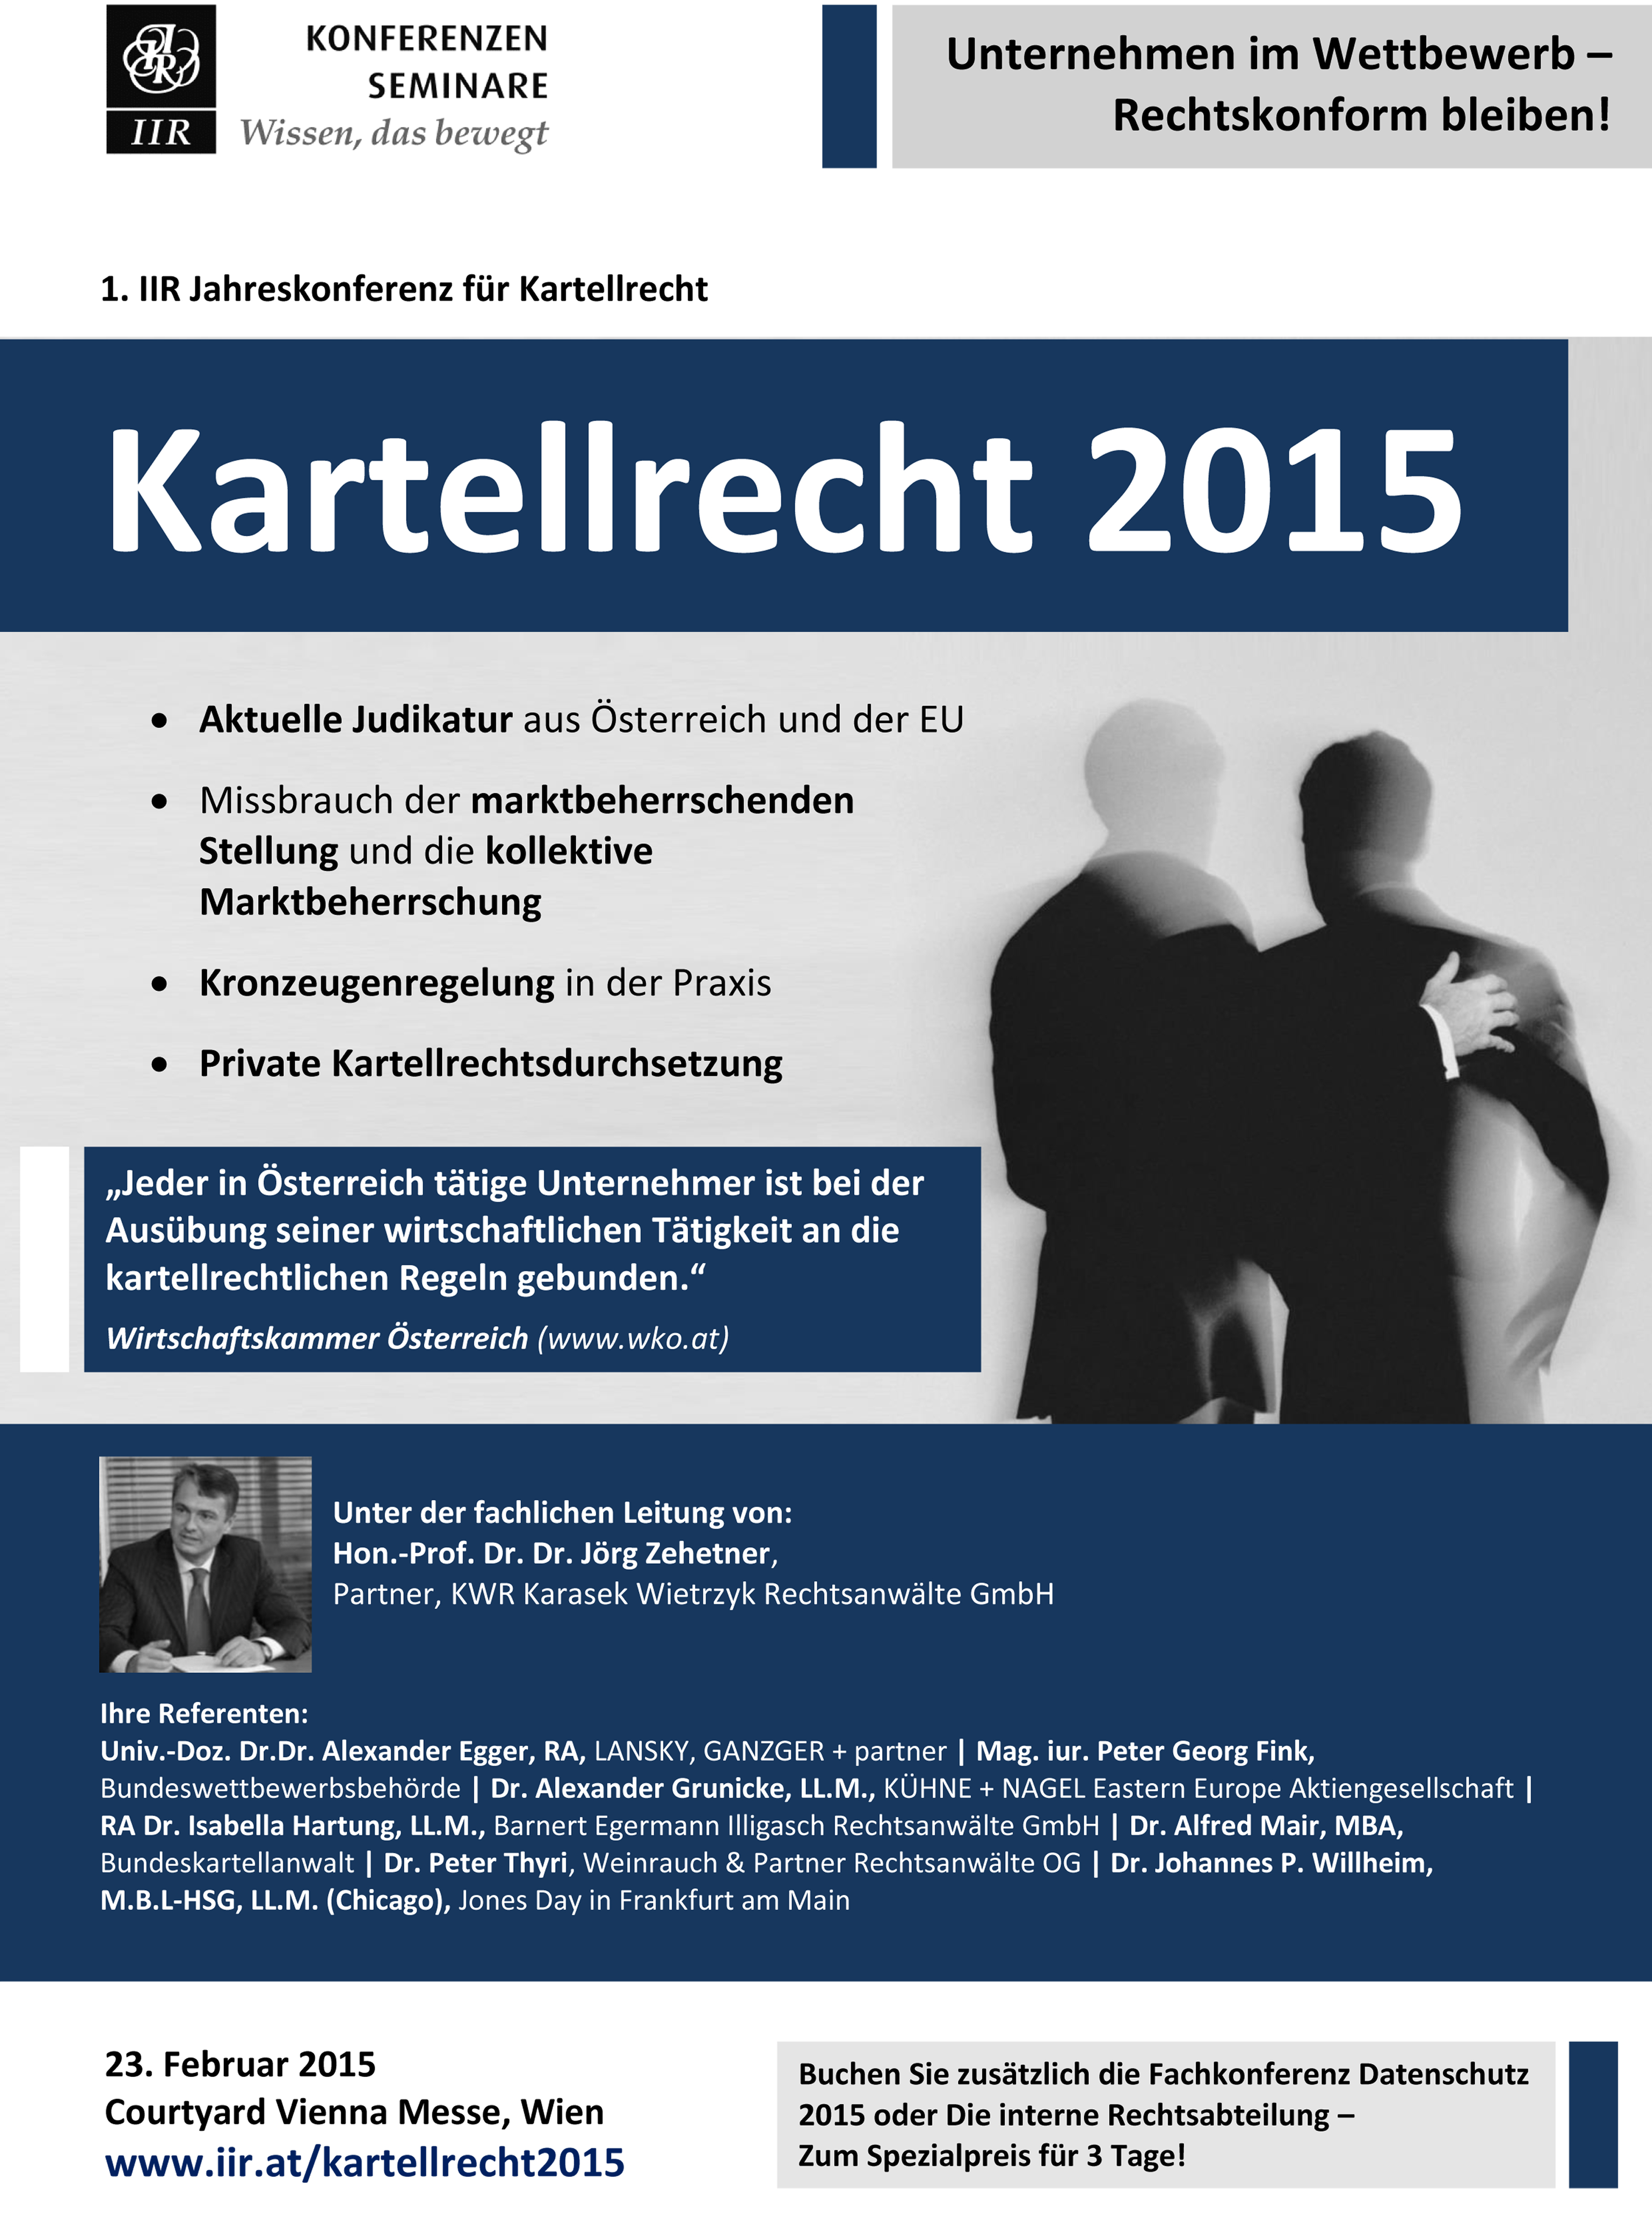 BILD - IIR Jahreskonferenz Kartellrecht 2015